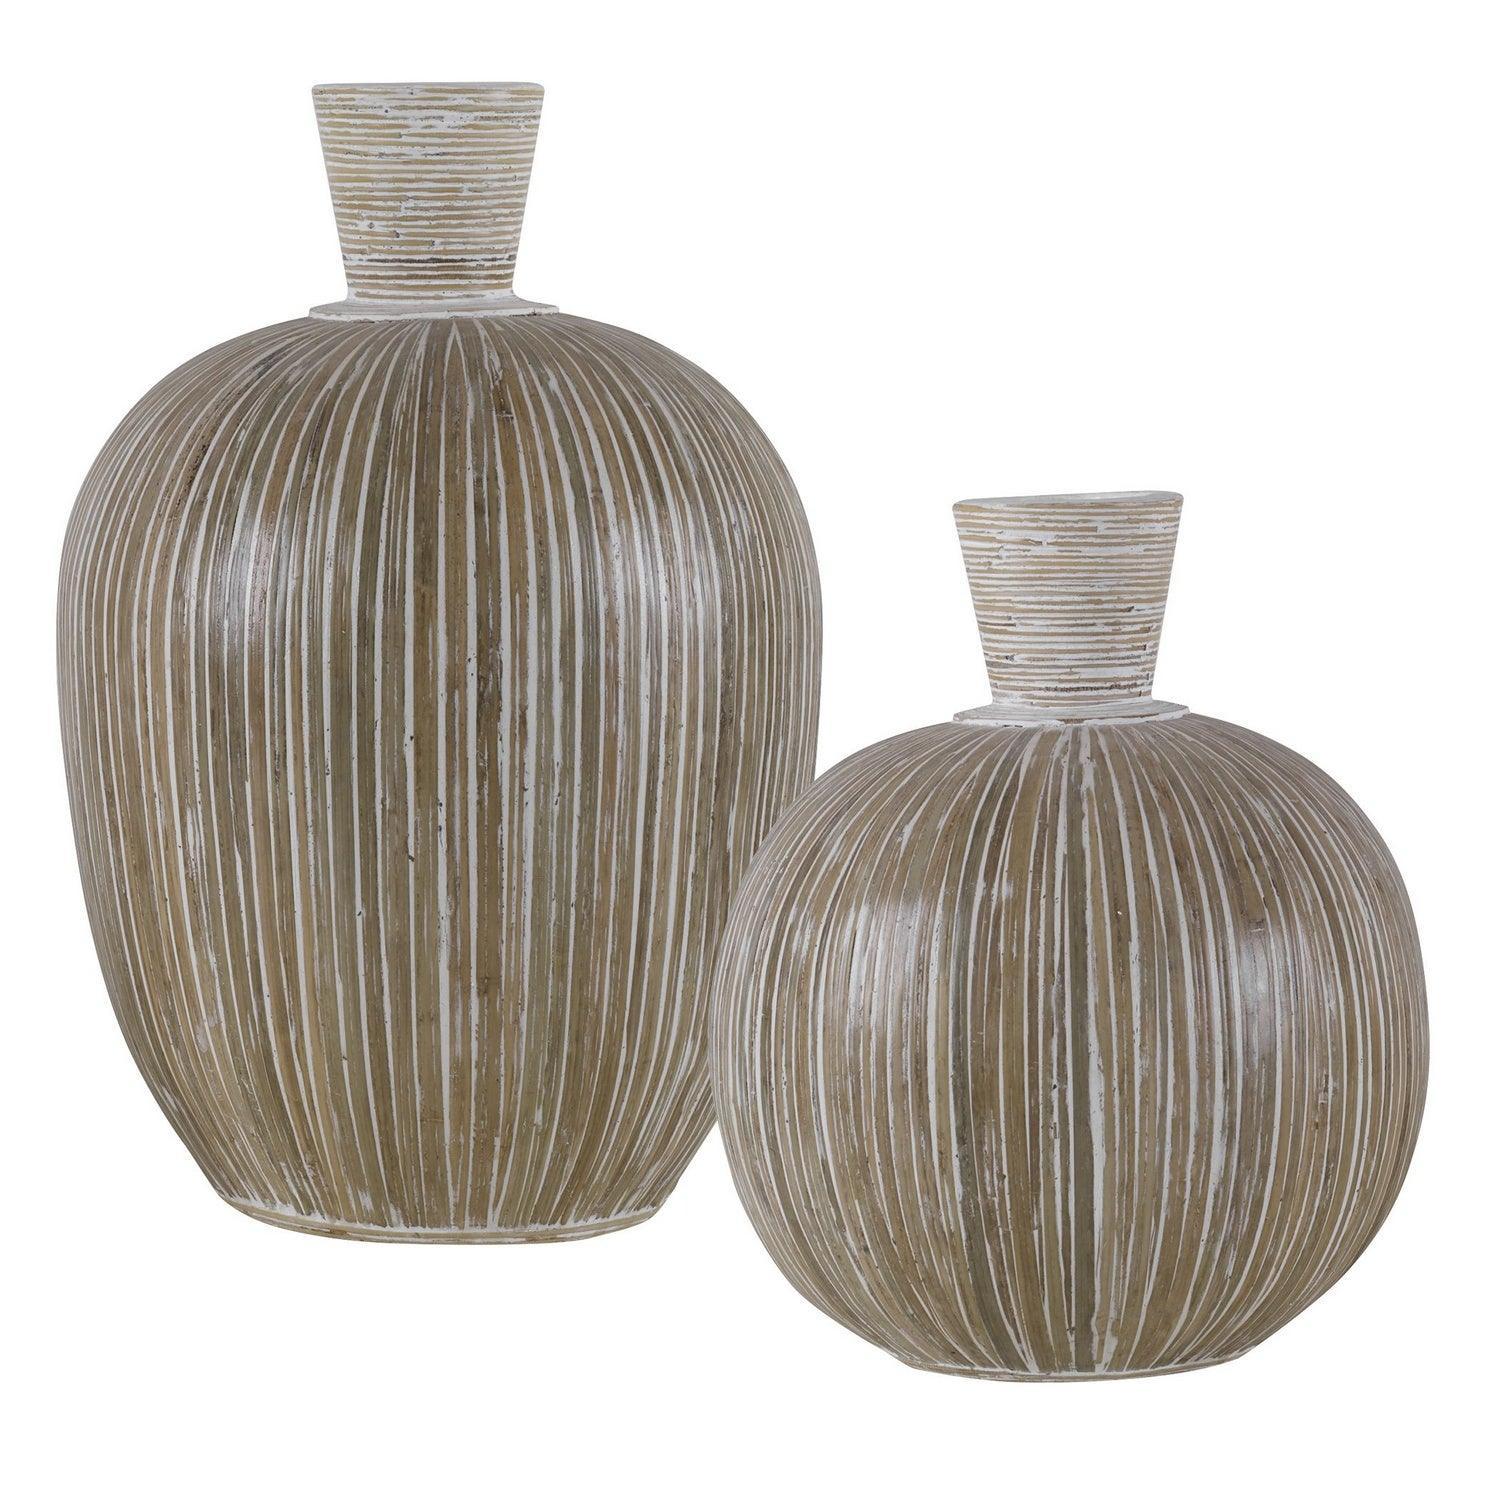 The Uttermost - Islander Vases, S/2 - 17990 | Montreal Lighting & Hardware